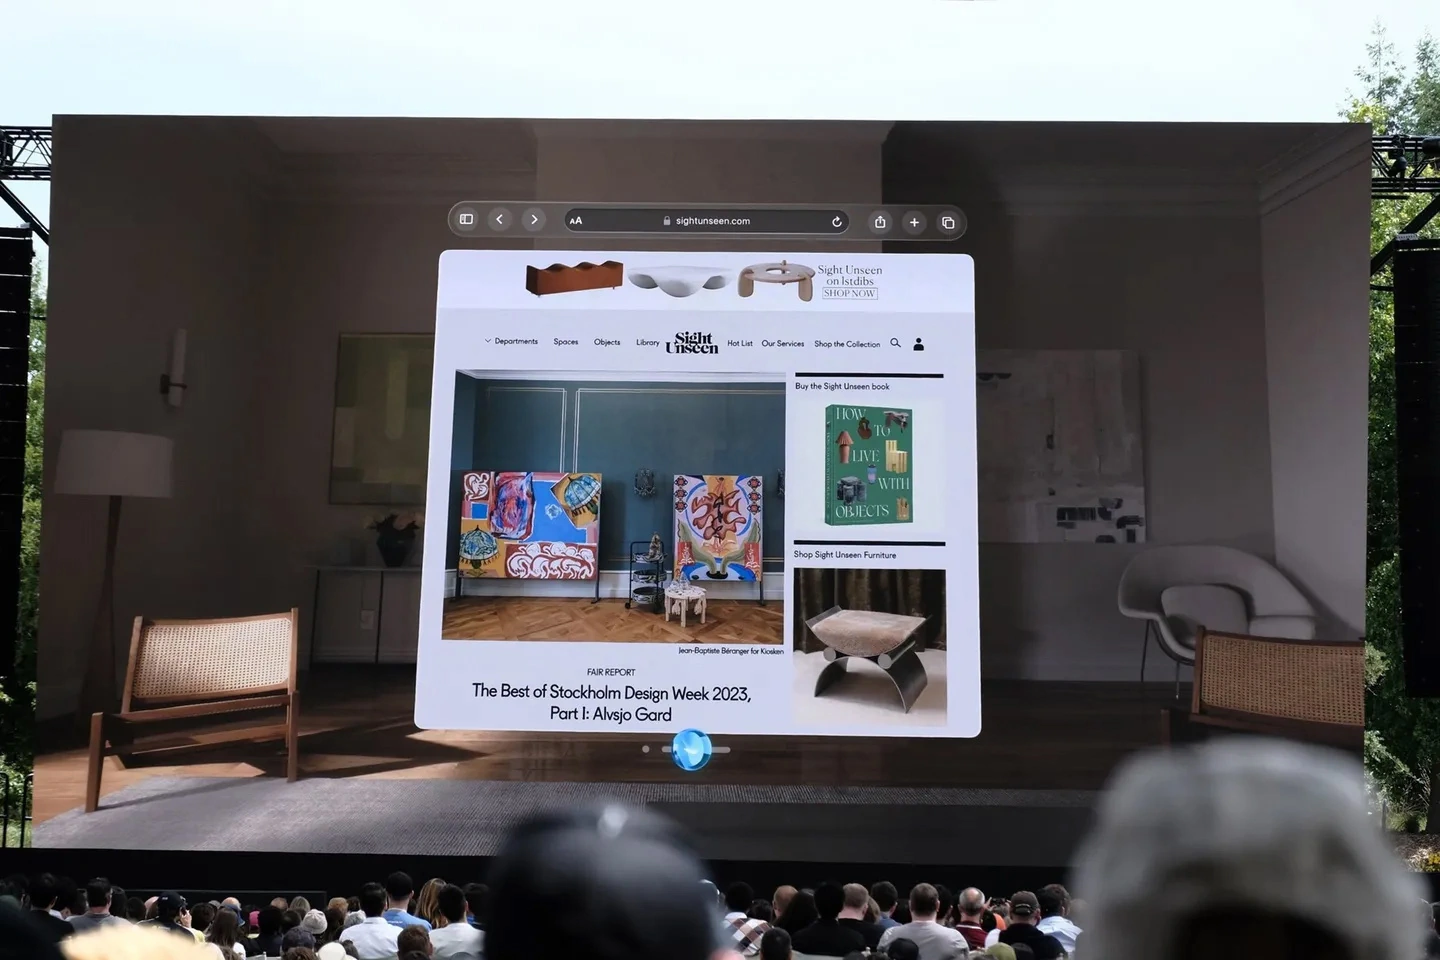 苹果推出 visionOS：为 Vision Pro 头显驾驭生产力、娱乐和游戏等体验